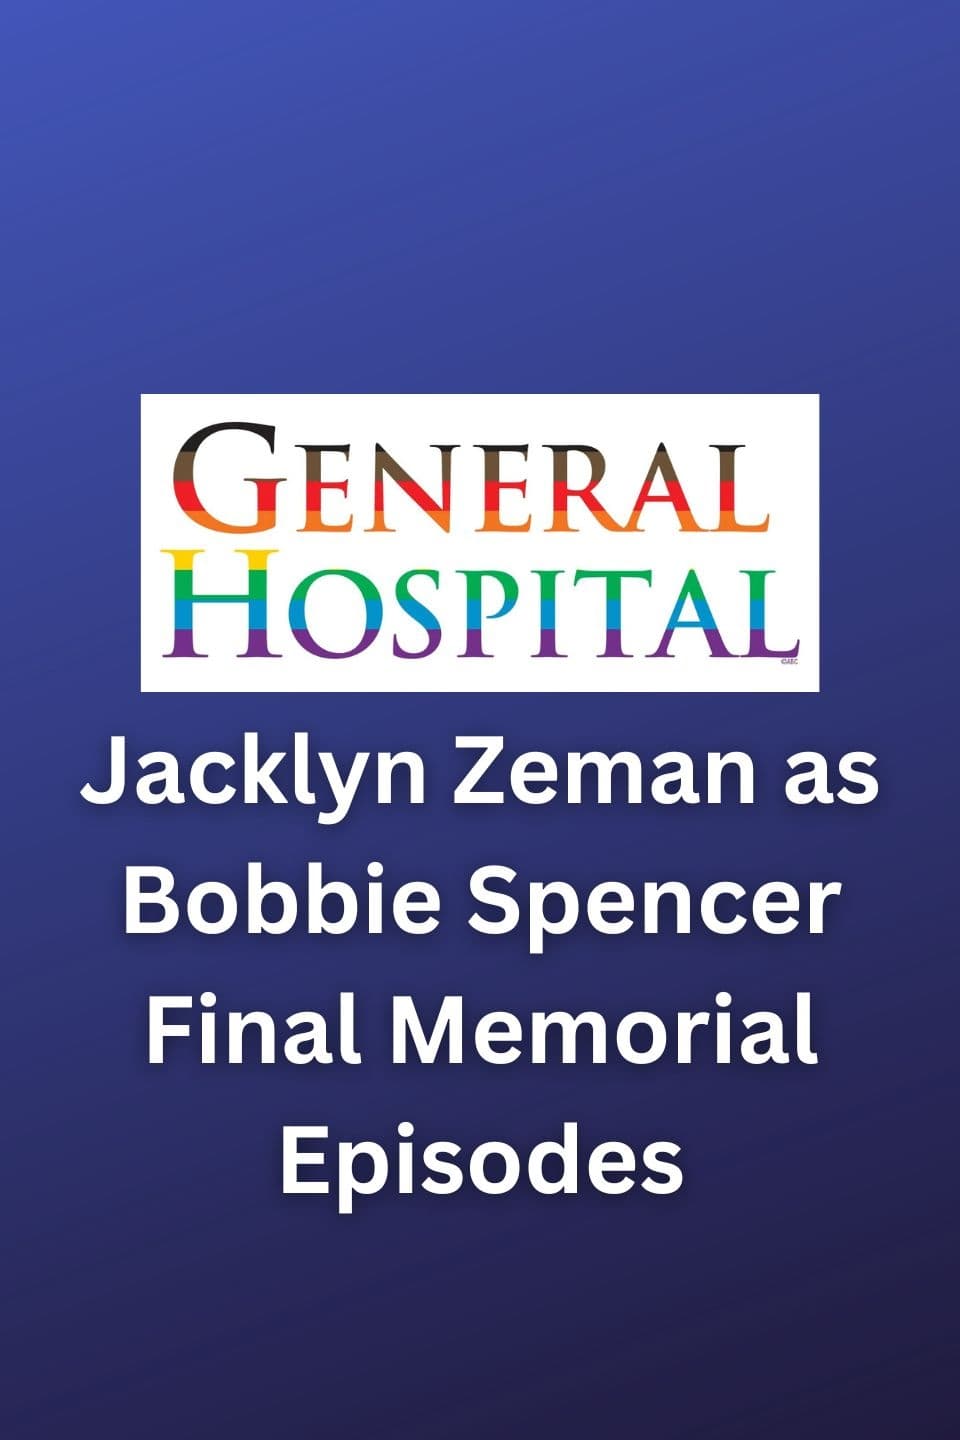 General Hospital Jacklyn Zeman as Bobbie Spencer Final Memorial Episodes